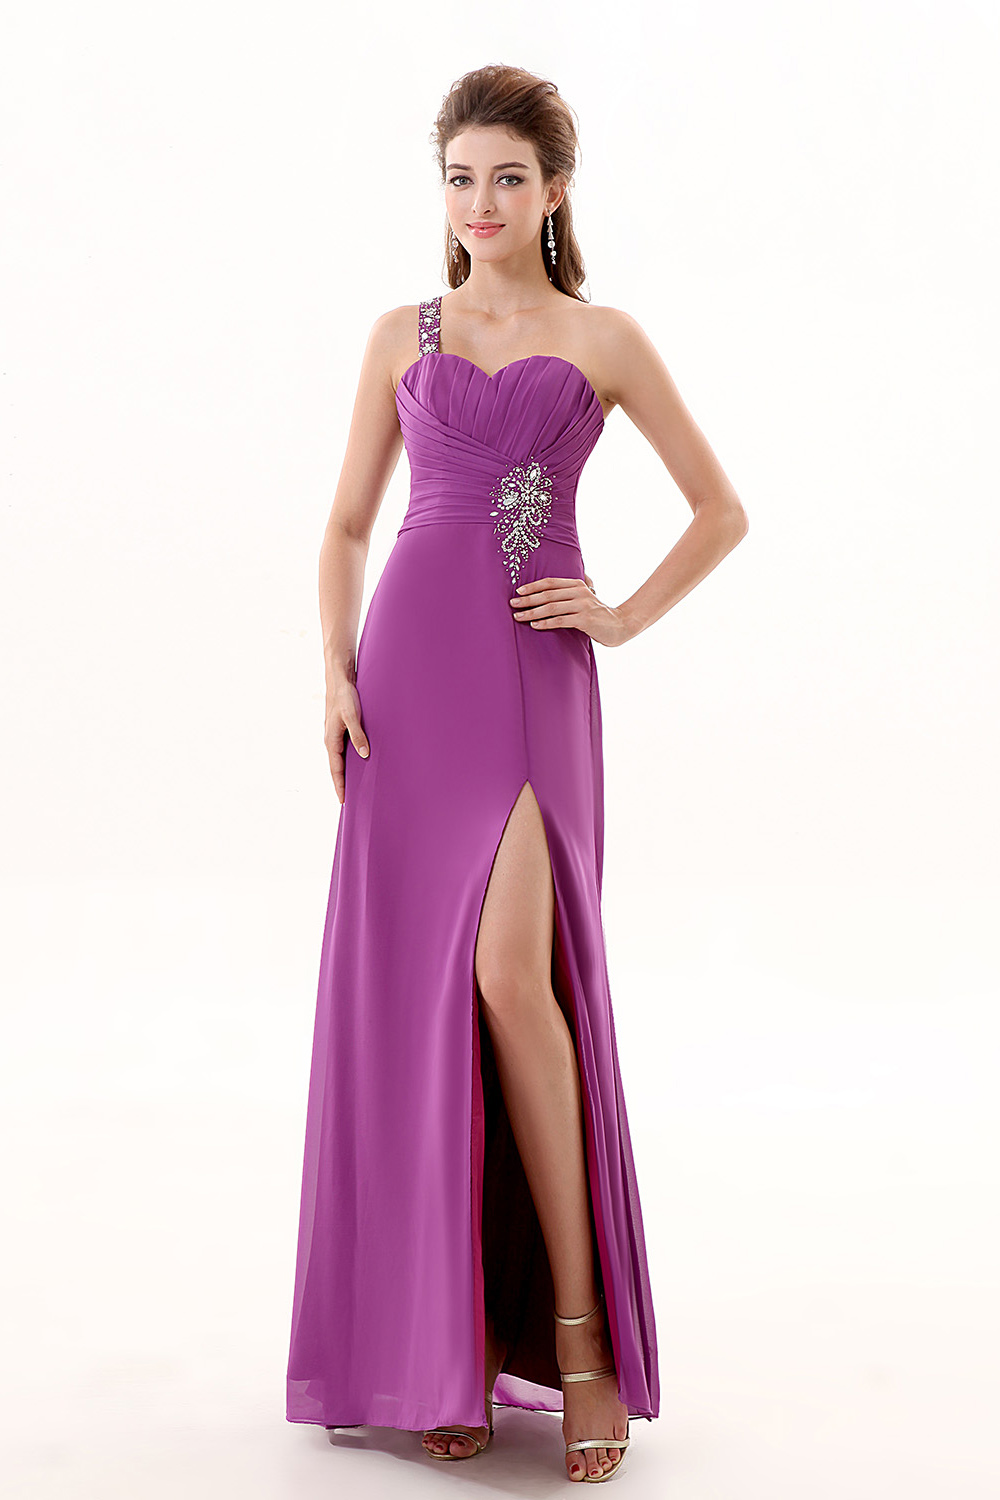 Sheath/Columnn One Shoulder Floor-length Chiffon Prom Dress